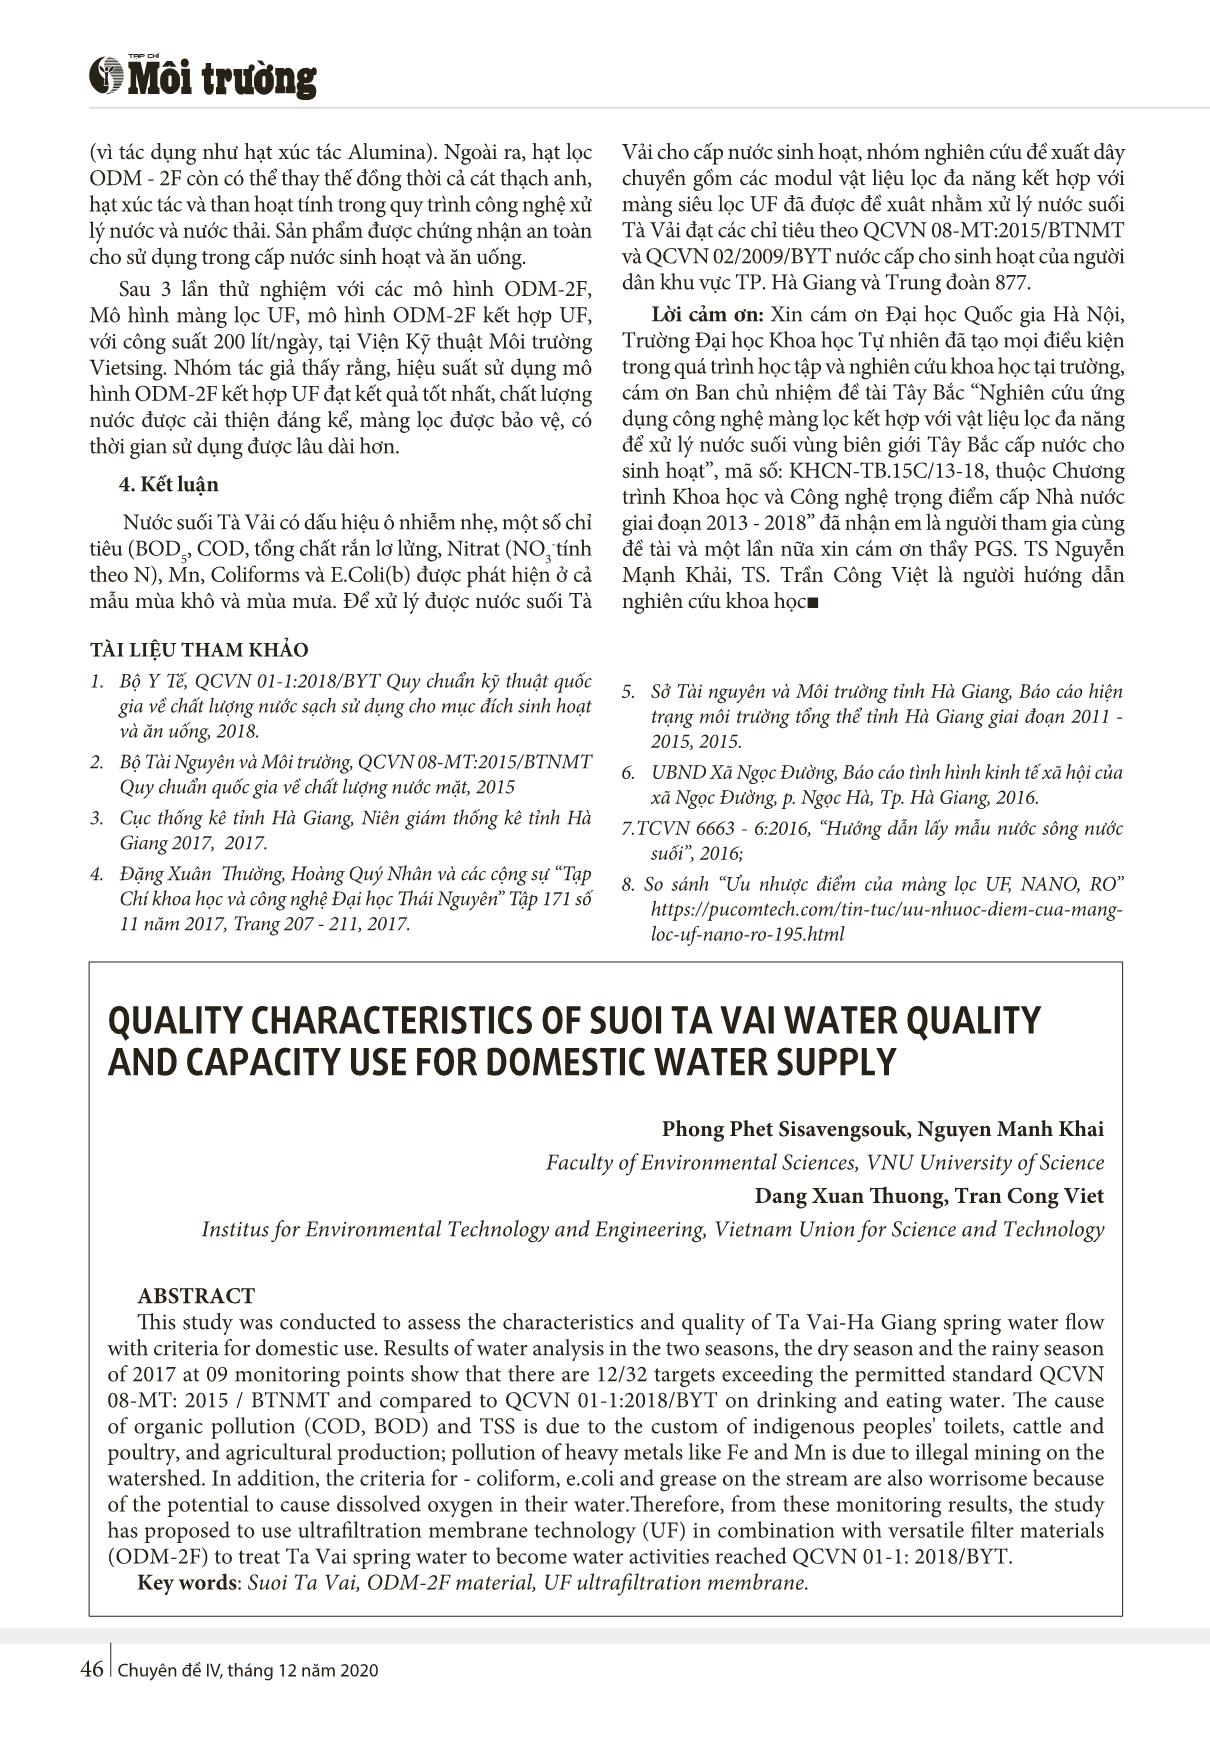 Đặc điểm chất lượng nước suối Tà vải và khả năng sử dụng cho mục đích cấp nước sinh hoạt trang 6